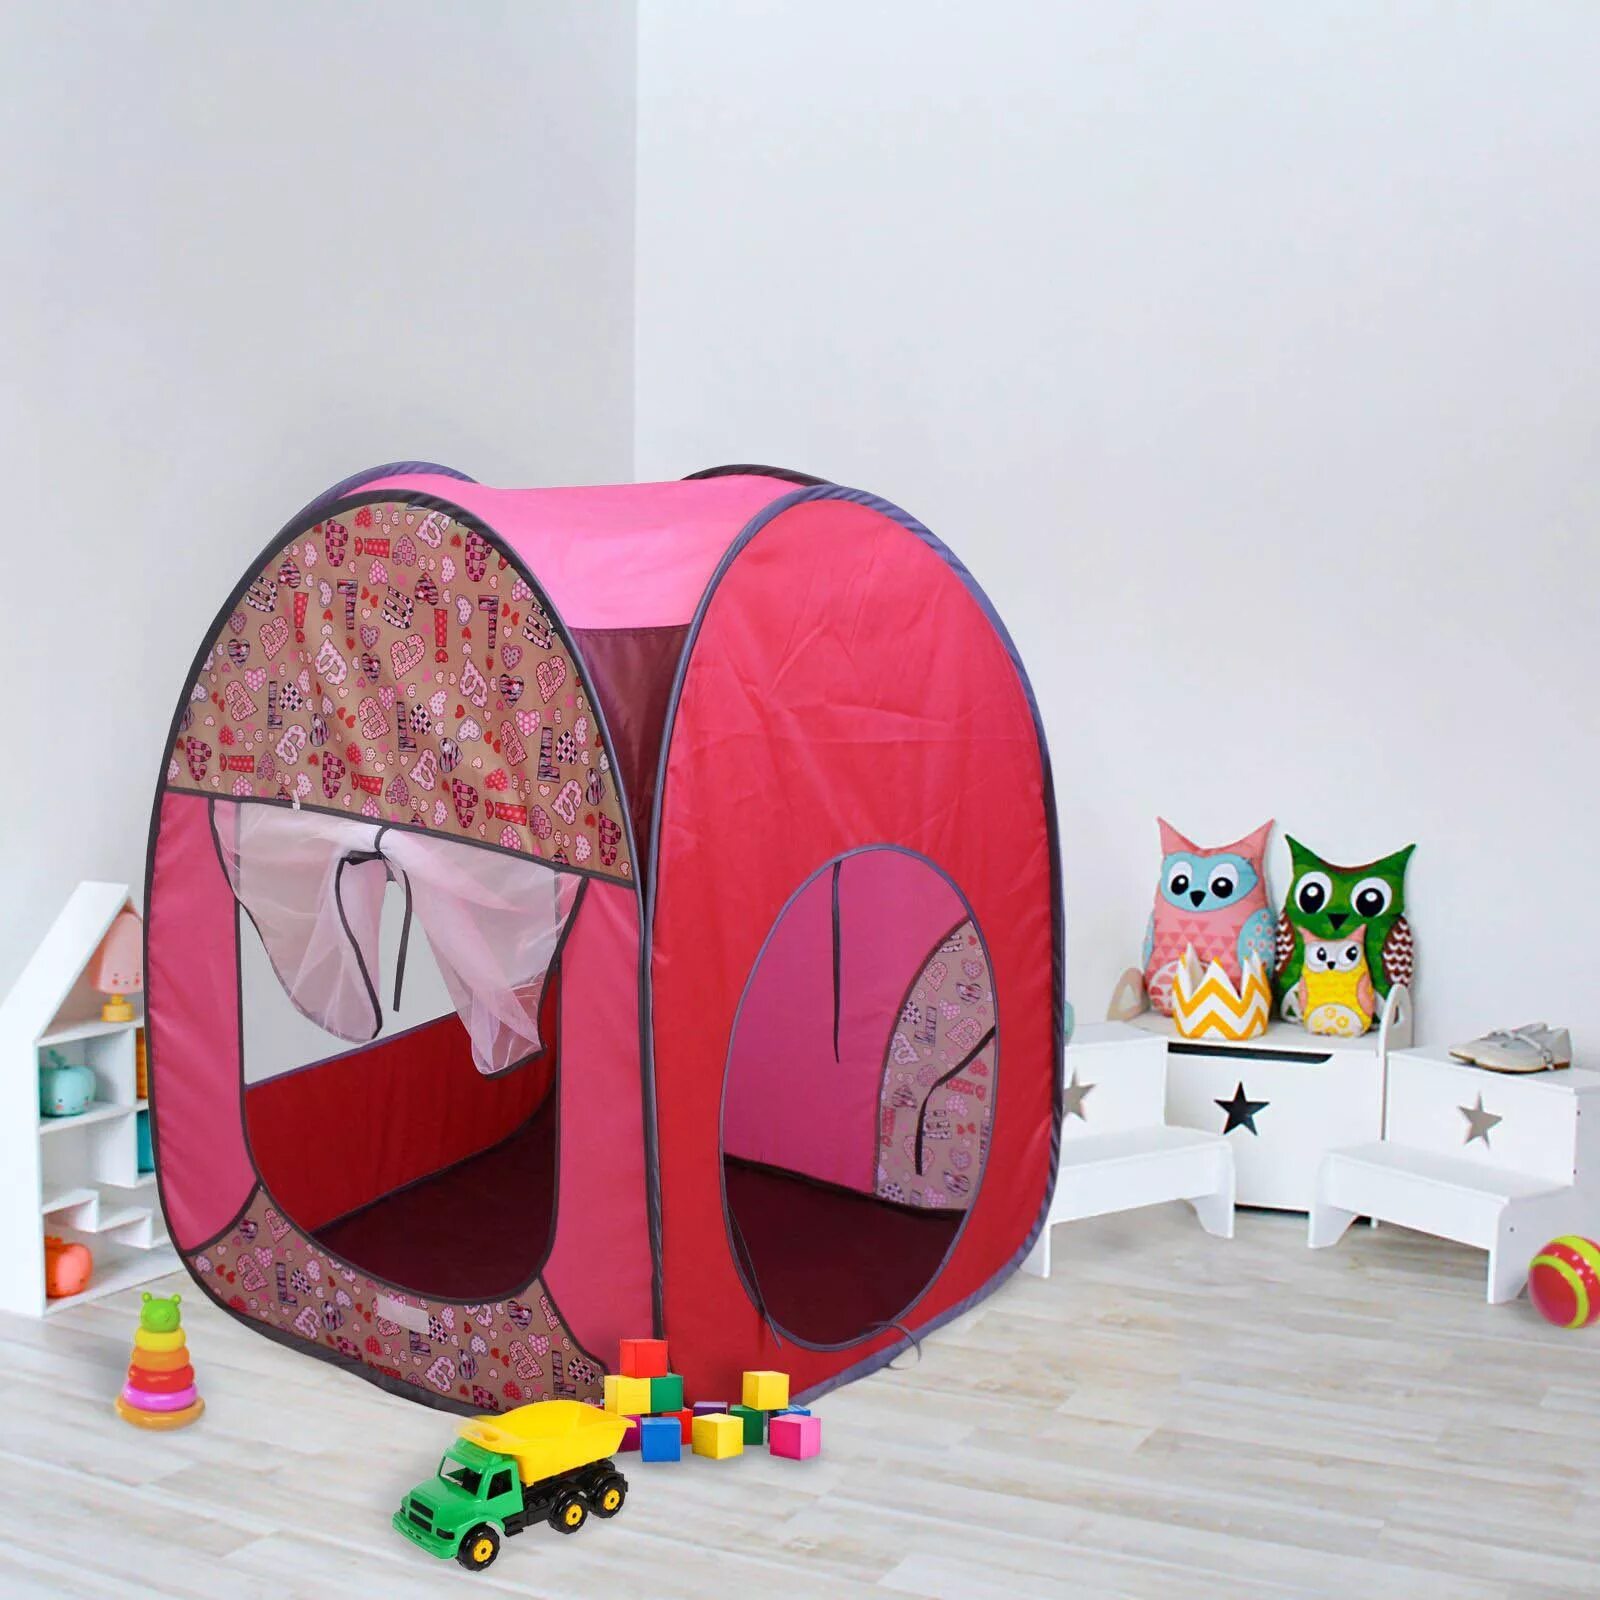 Палатка Belon пи-004к-пр Радужный домик 4 грани квадрат принт. Детская палатка. Игровая палатка для детей. Детская комната с палаткой. Купить квартиру палатка